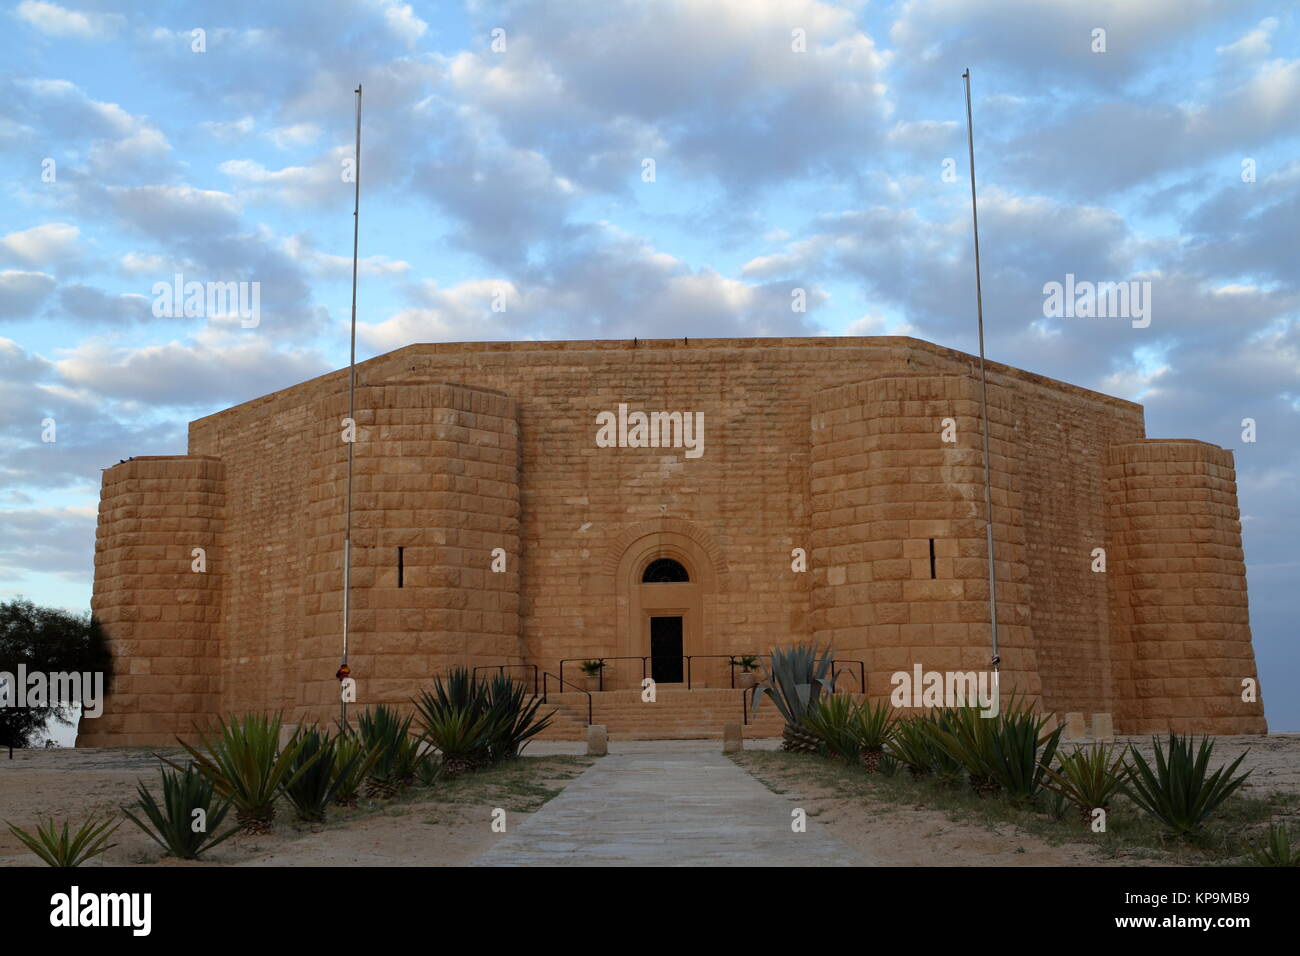 Site de gravité de la guerre allemande El Alamein en Égypte Banque D'Images